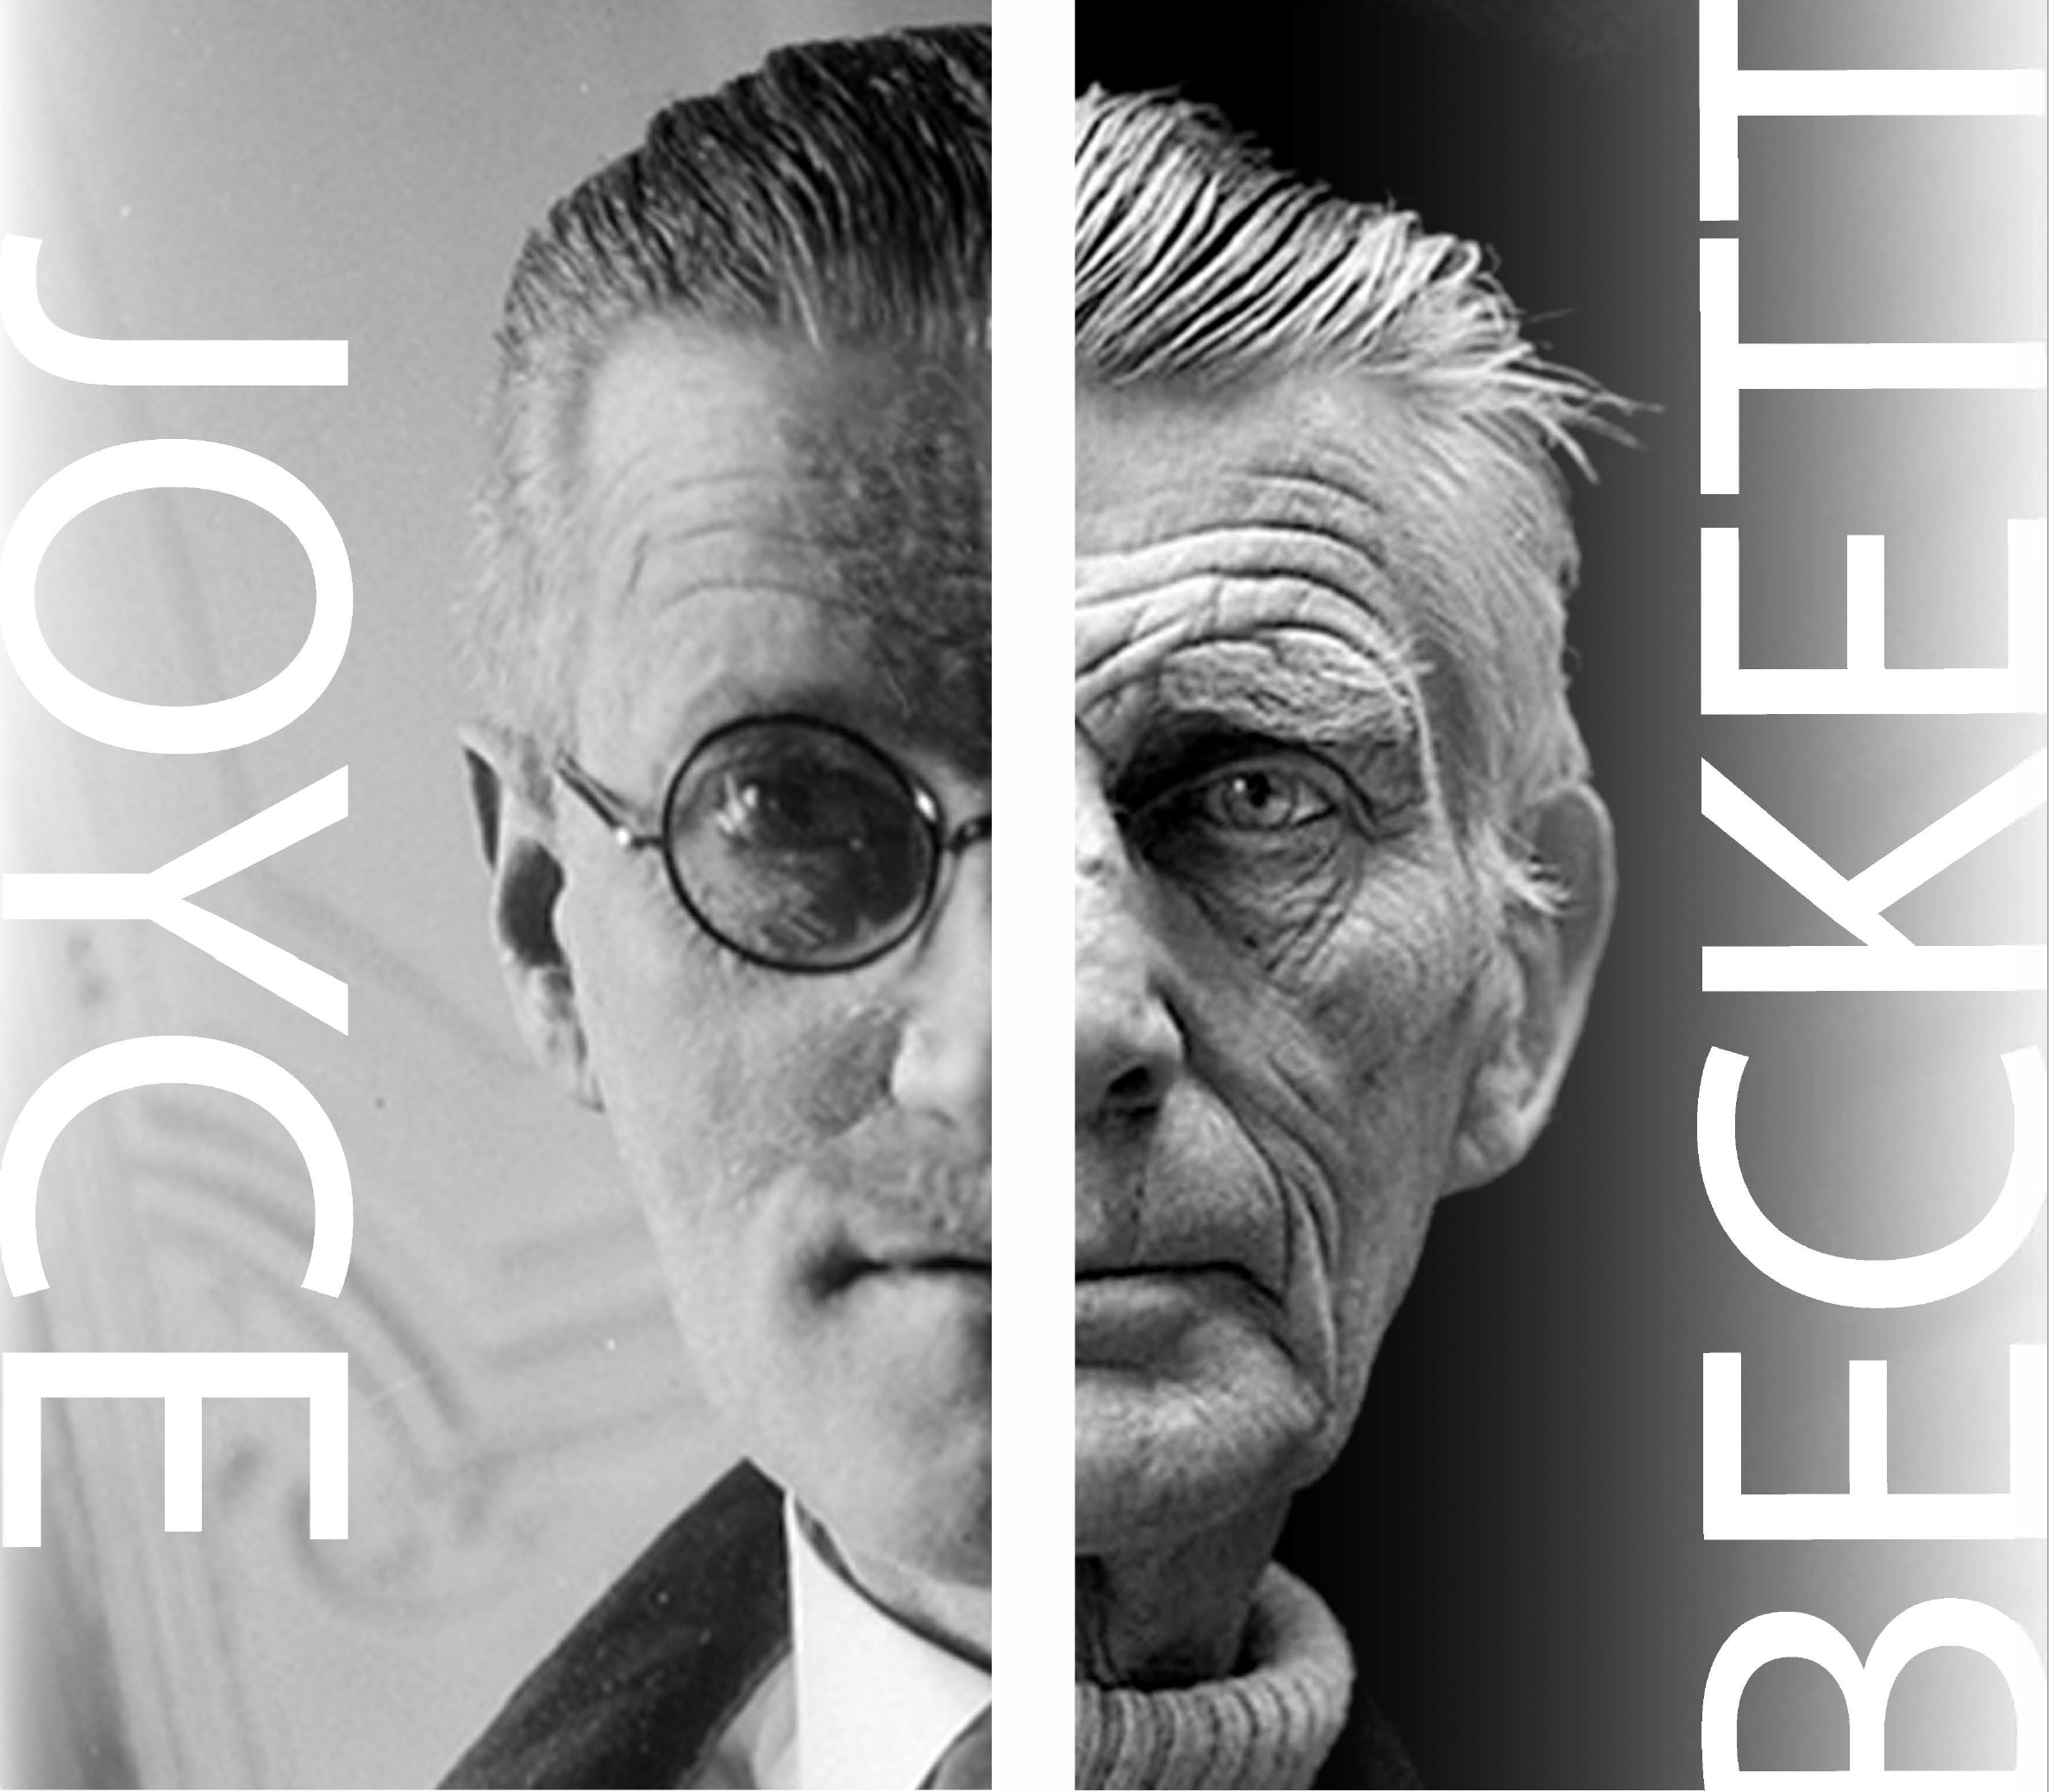 Joyce to Beckett